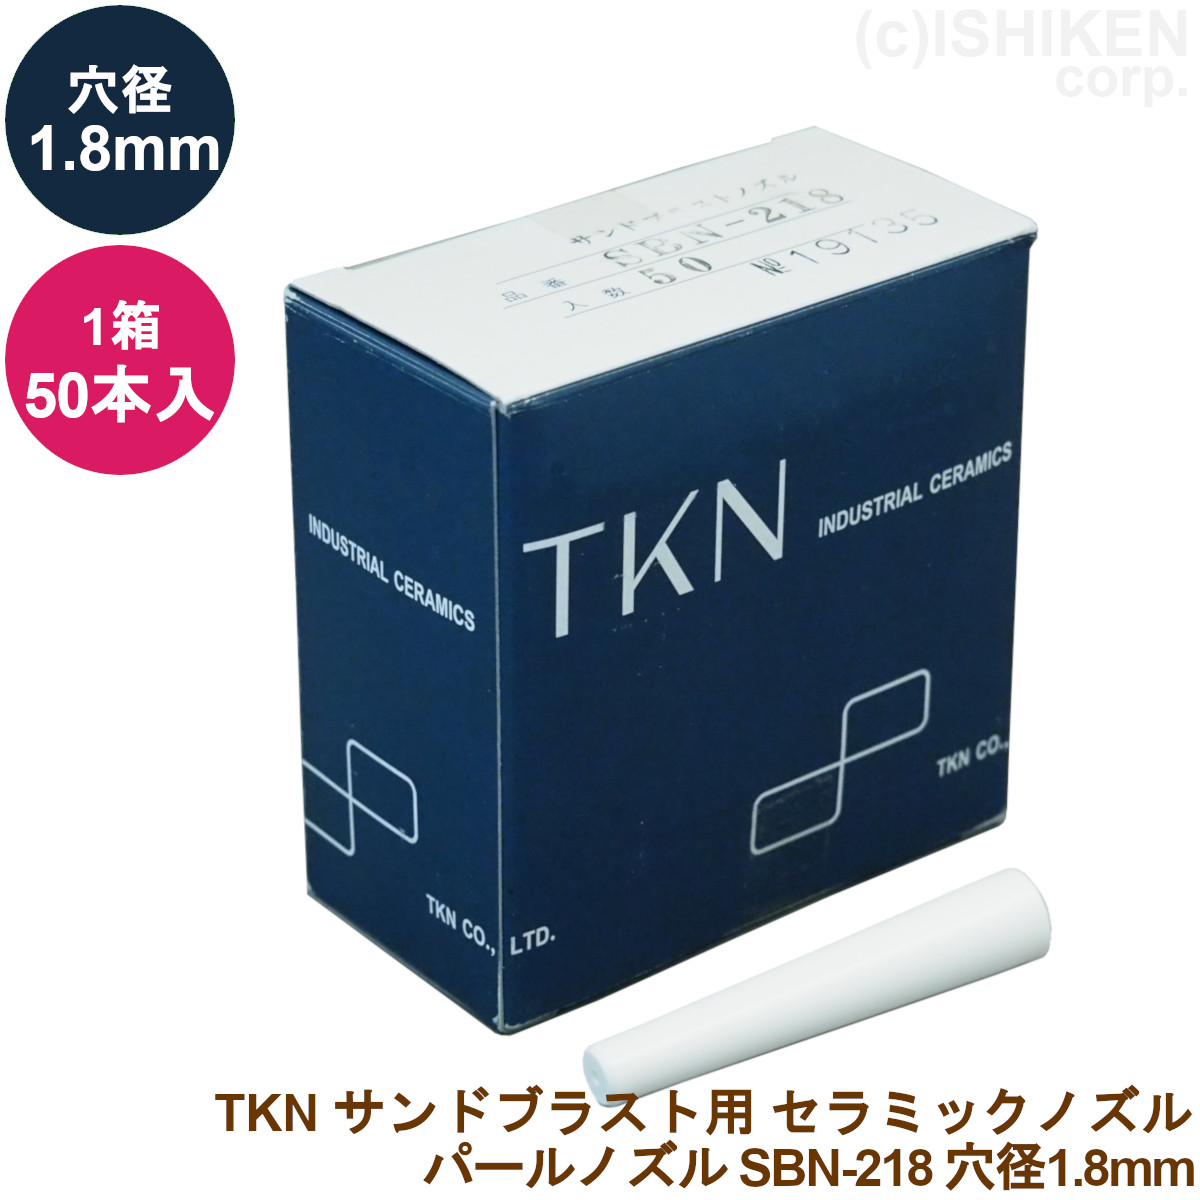 【楽天市場】TKN パールノズル SBN-218 50本入り/1箱穴径:1.8mm